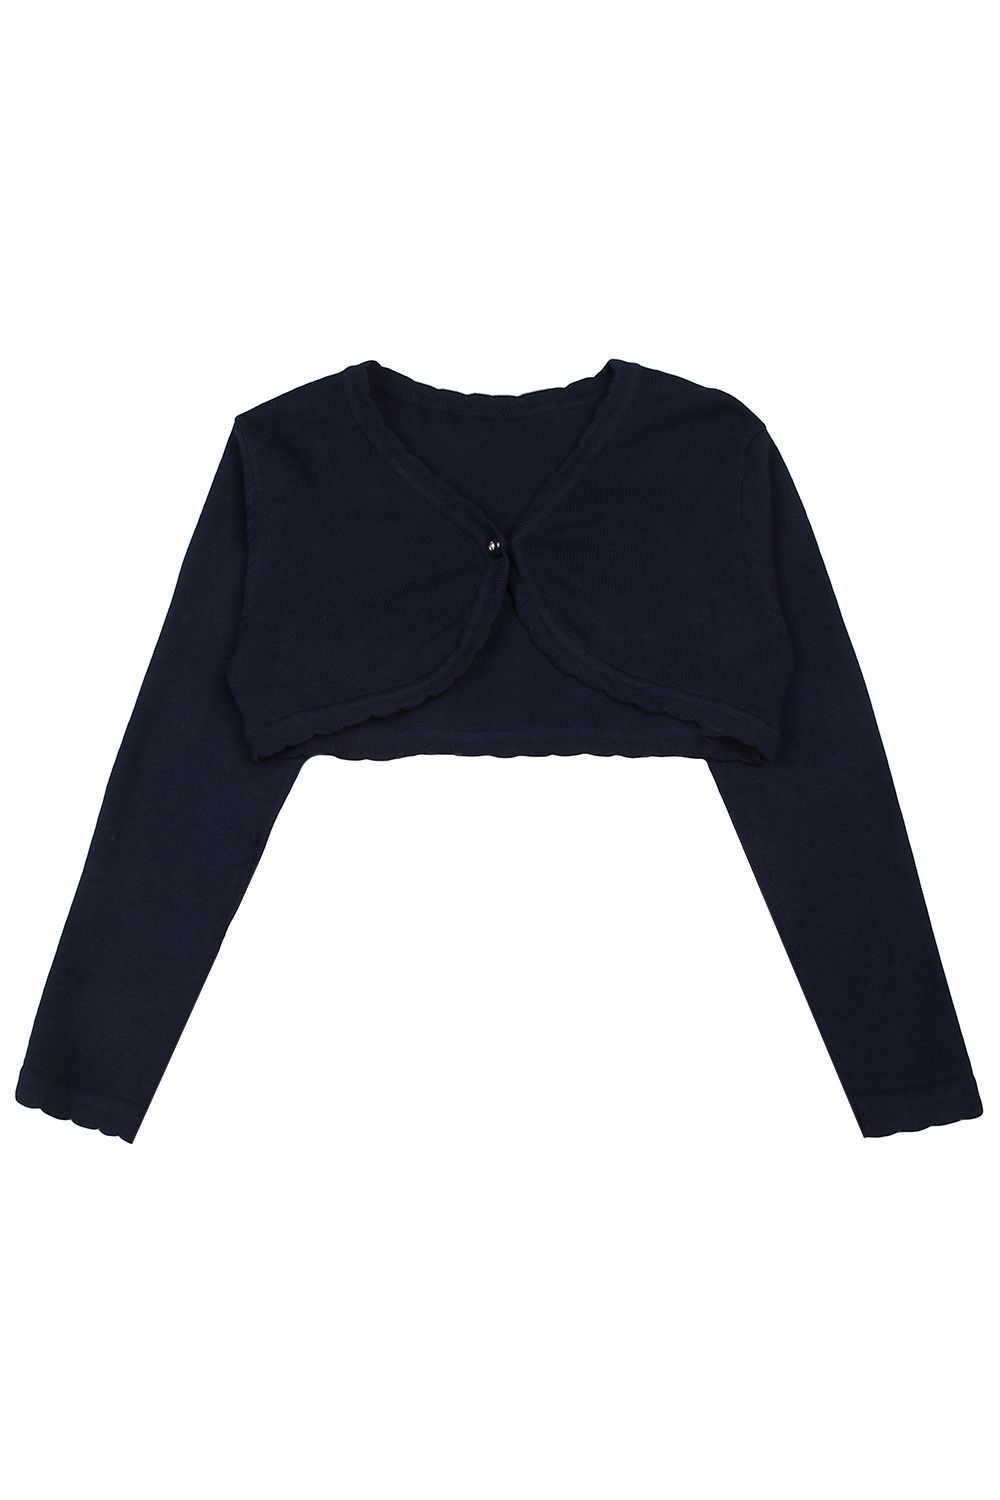 Болеро panolino комплект для девочки шорты кофта болеро колготки pn14912